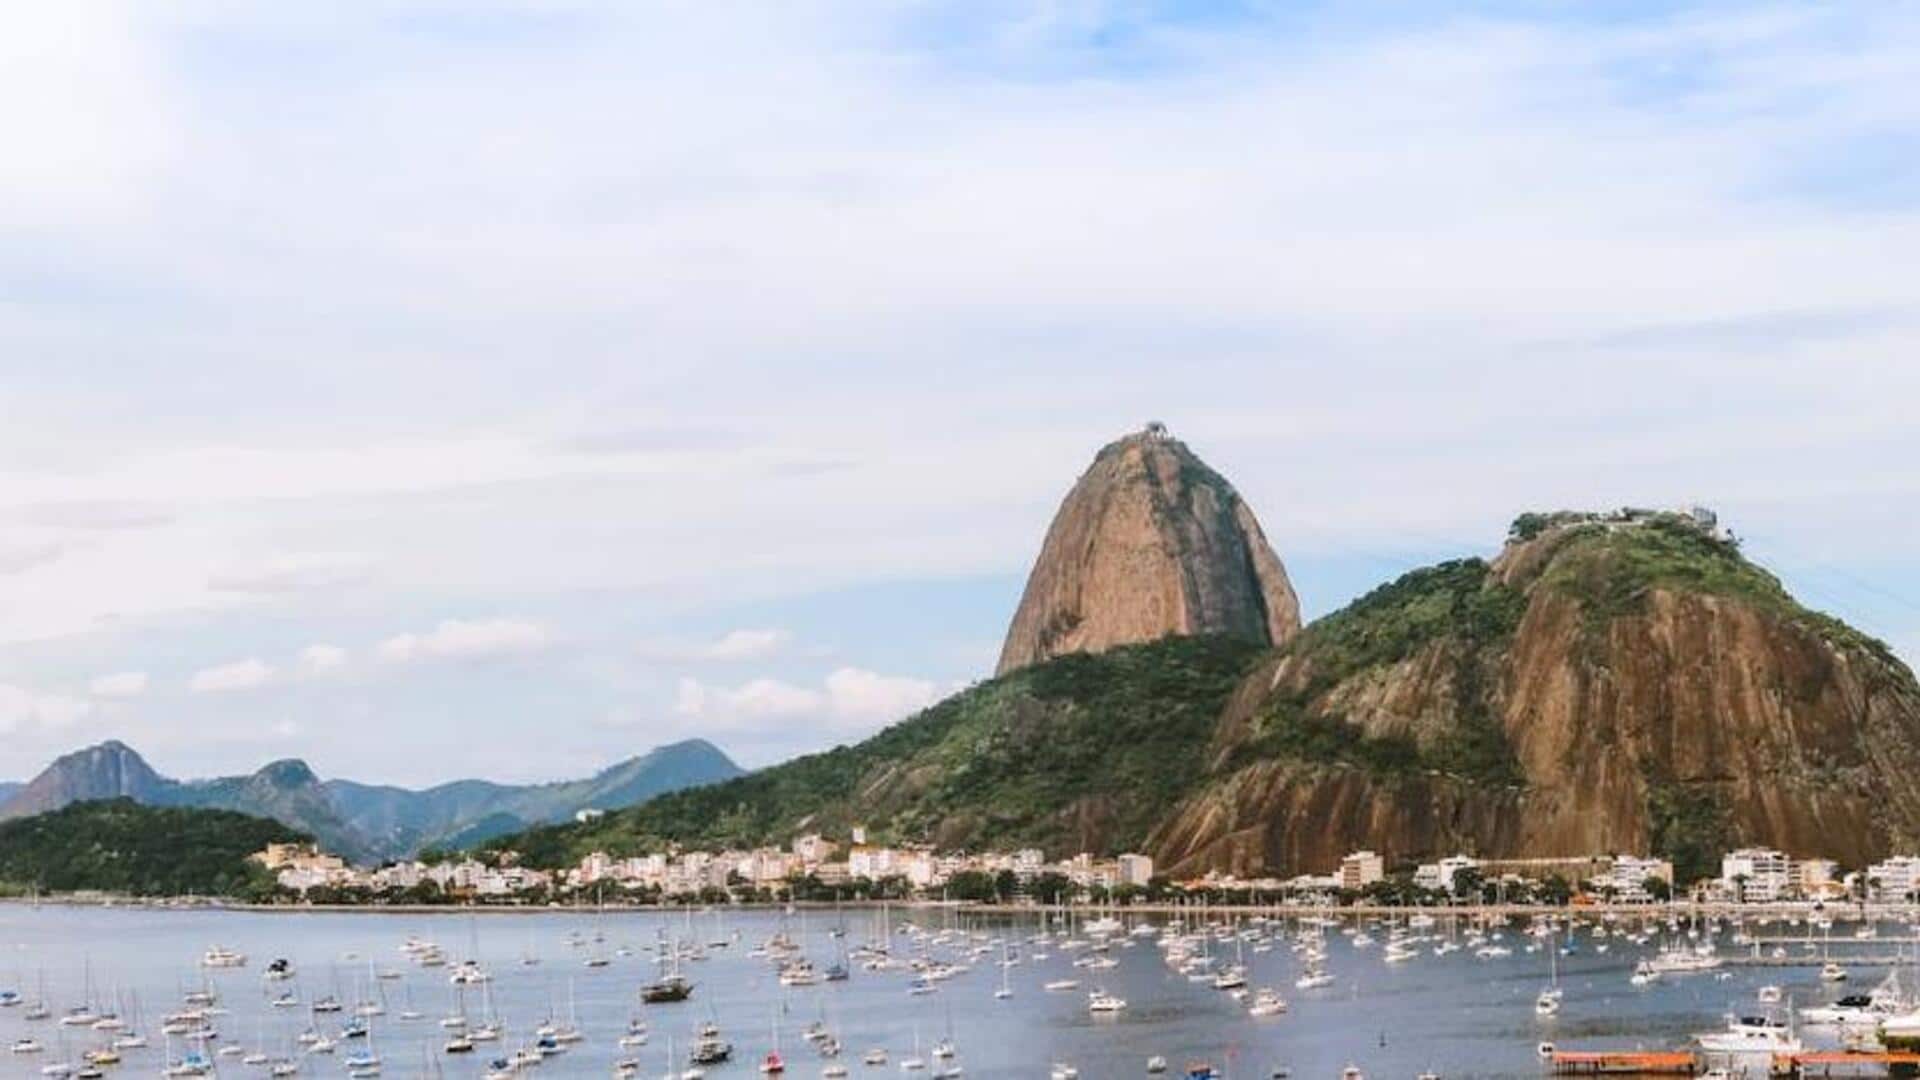 Rio's hidden beach gems beyond Copacabana